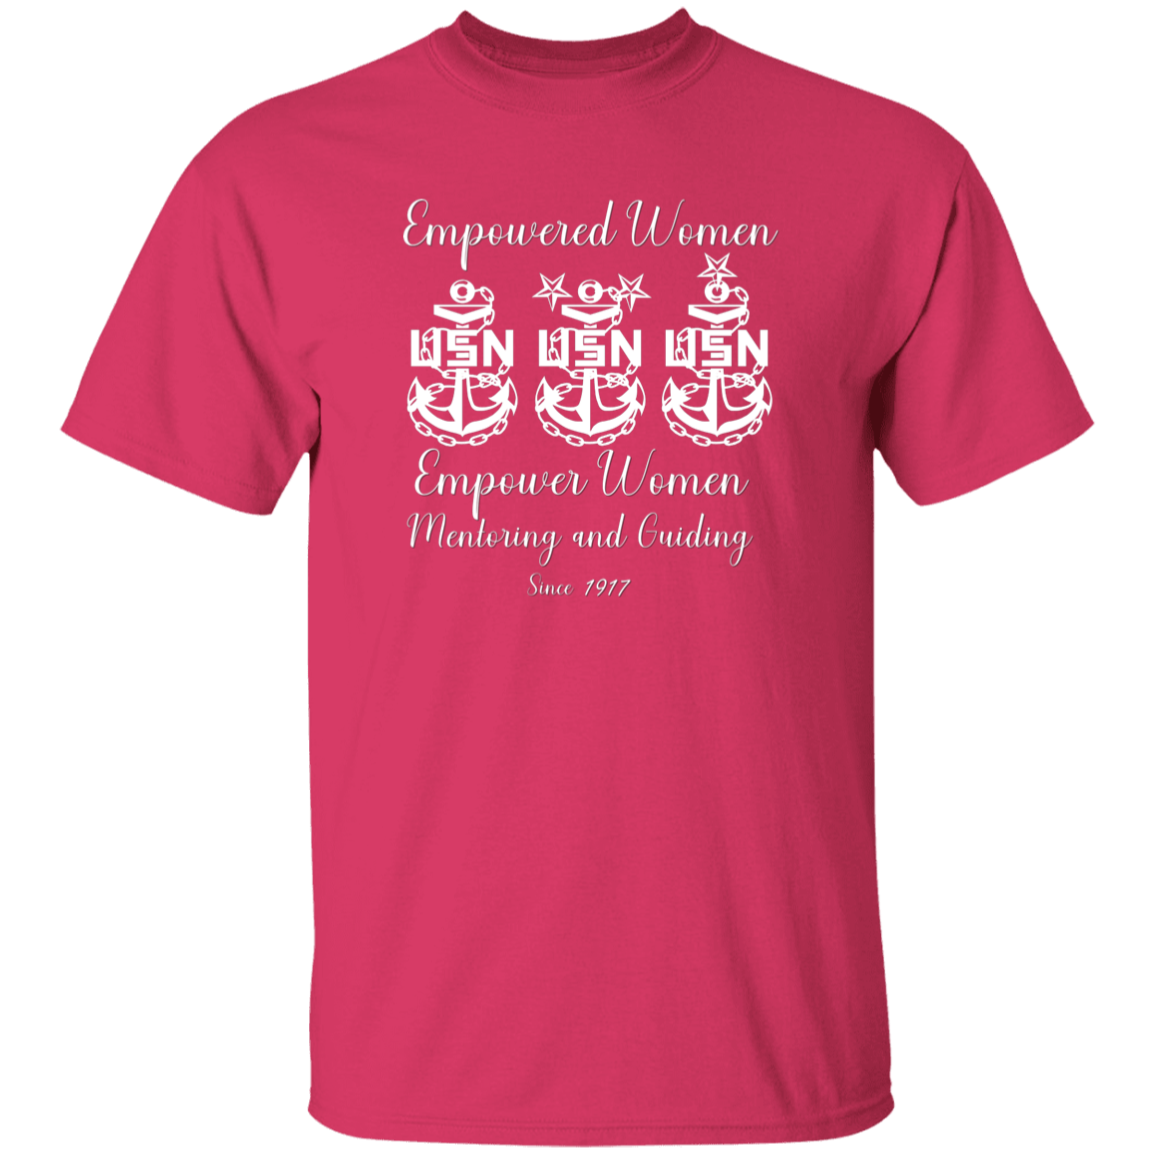 Empowered Women White Design 5.3 oz. T-Shirt